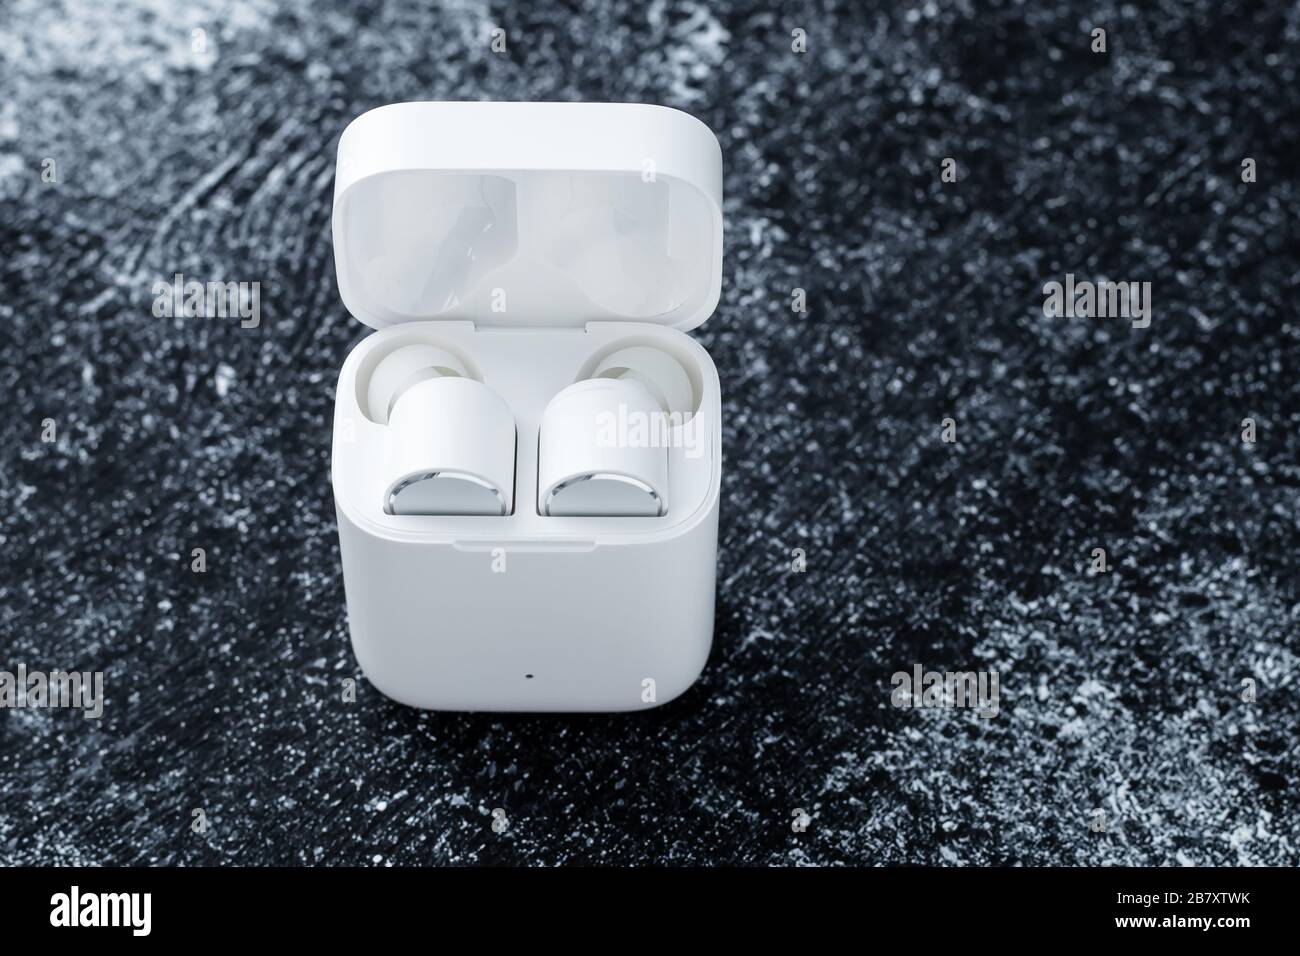 Auricolari Bluetooth bianchi con custodia di ricarica su sfondo scuro e sporco. Gadget per ascoltare musica. Dispositivo elettronico. Spazio vuoto per il testo Foto Stock